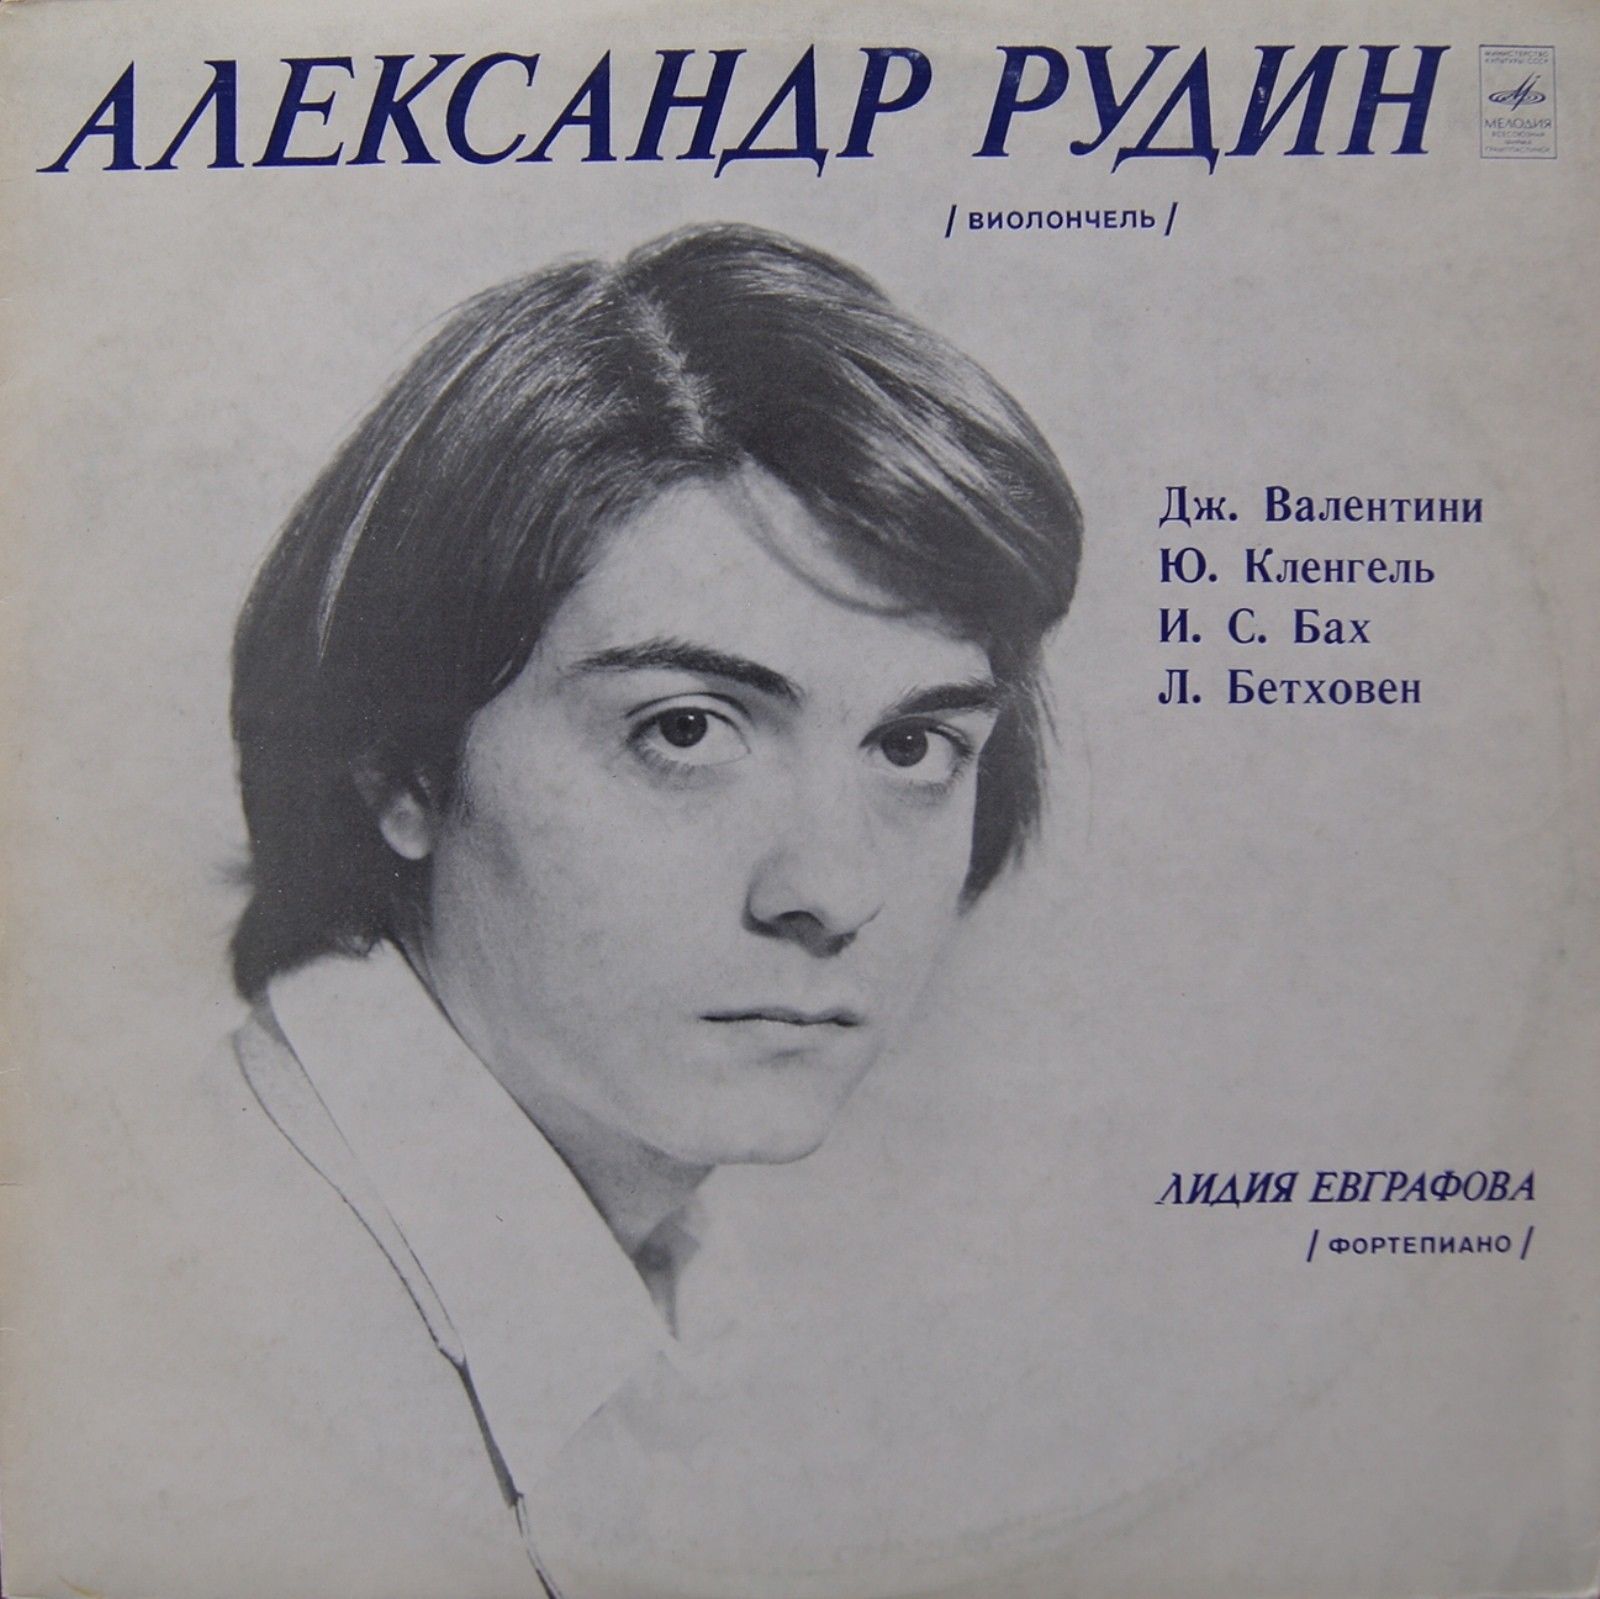 Александр РУДИН - виолончель. Лидия ЕВГРАФОВА - фортепиано